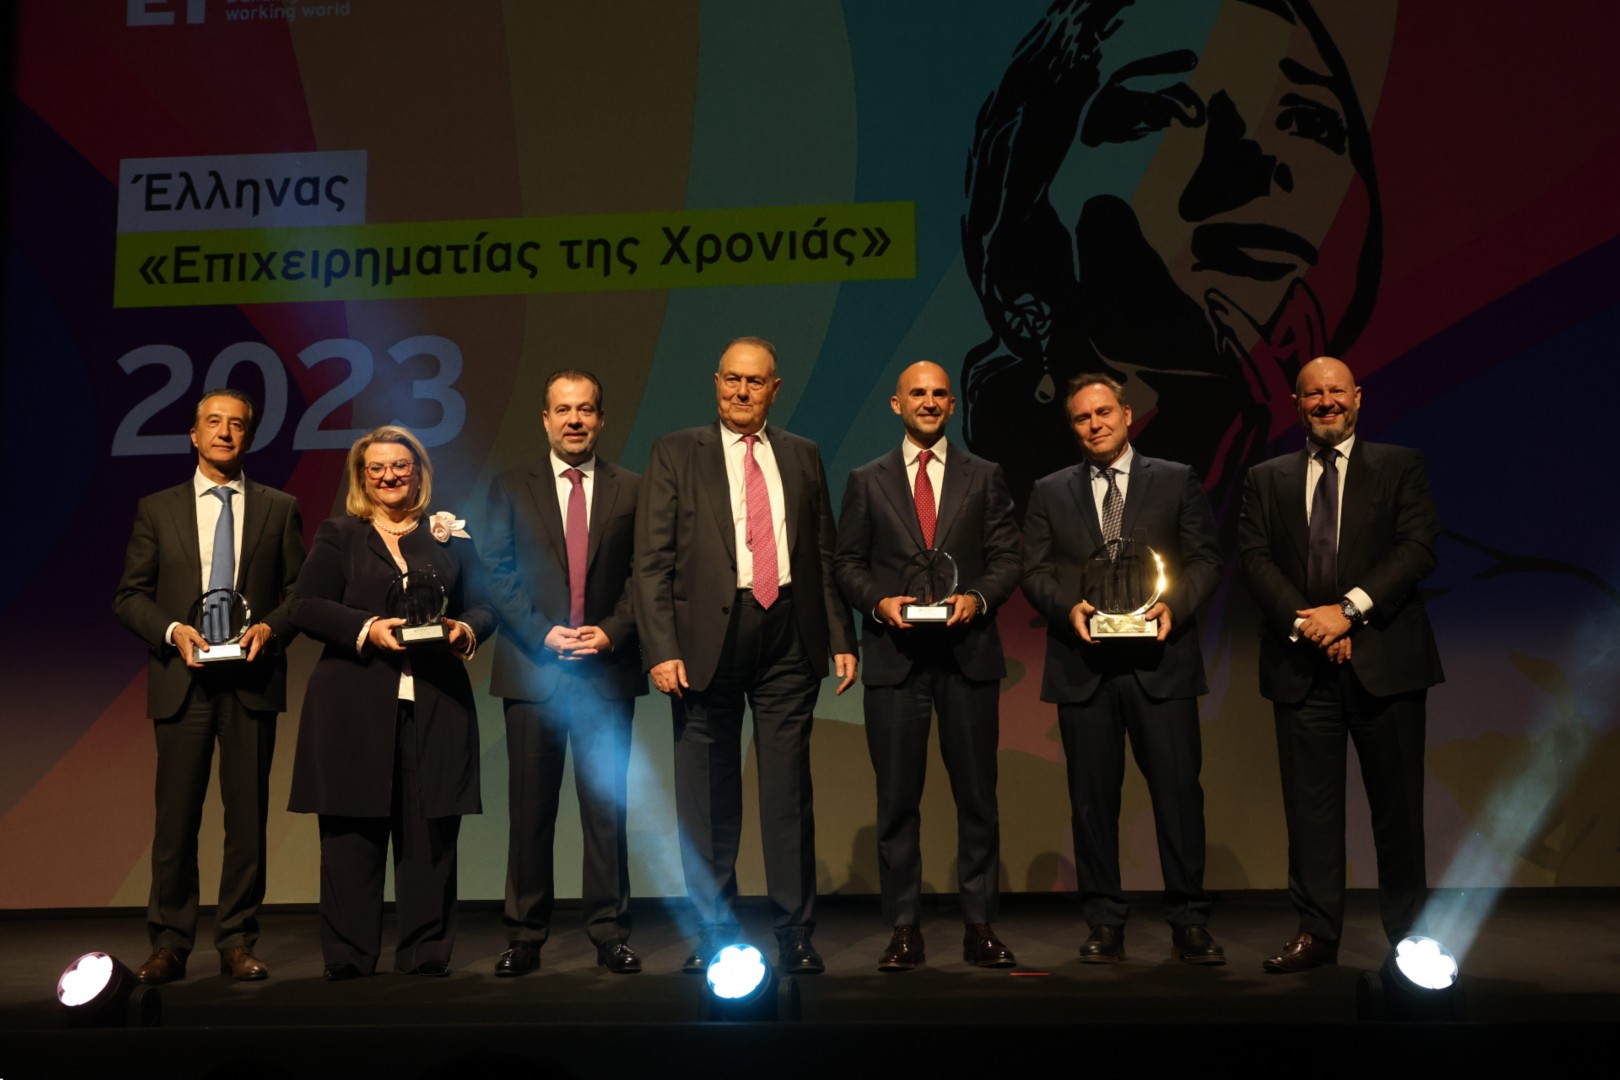 Ομαδική φωτογραφία (από τα αριστερά στα δεξιά): Κρίστιαν Χατζημηνάς, Μαίρη Χατζάκου, Γιώργος Παπαδημητρίου, Γιώργος Γεράρδος, Γιώργος Τσαρούχας, Ευτύχιος Βασιλάκης, Βασίλειος Κάτσος